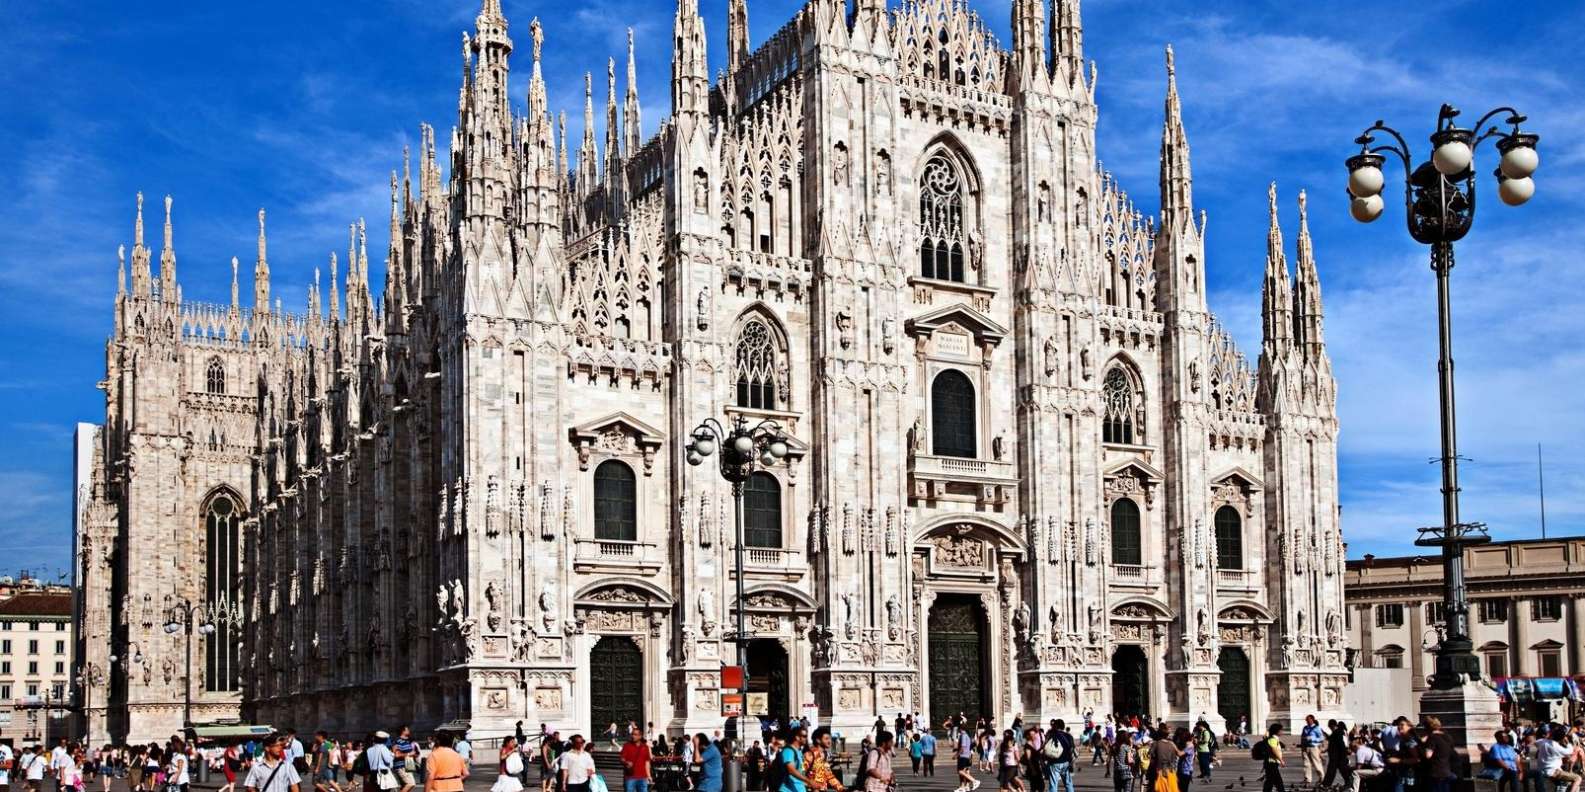 Готический собор в Милане